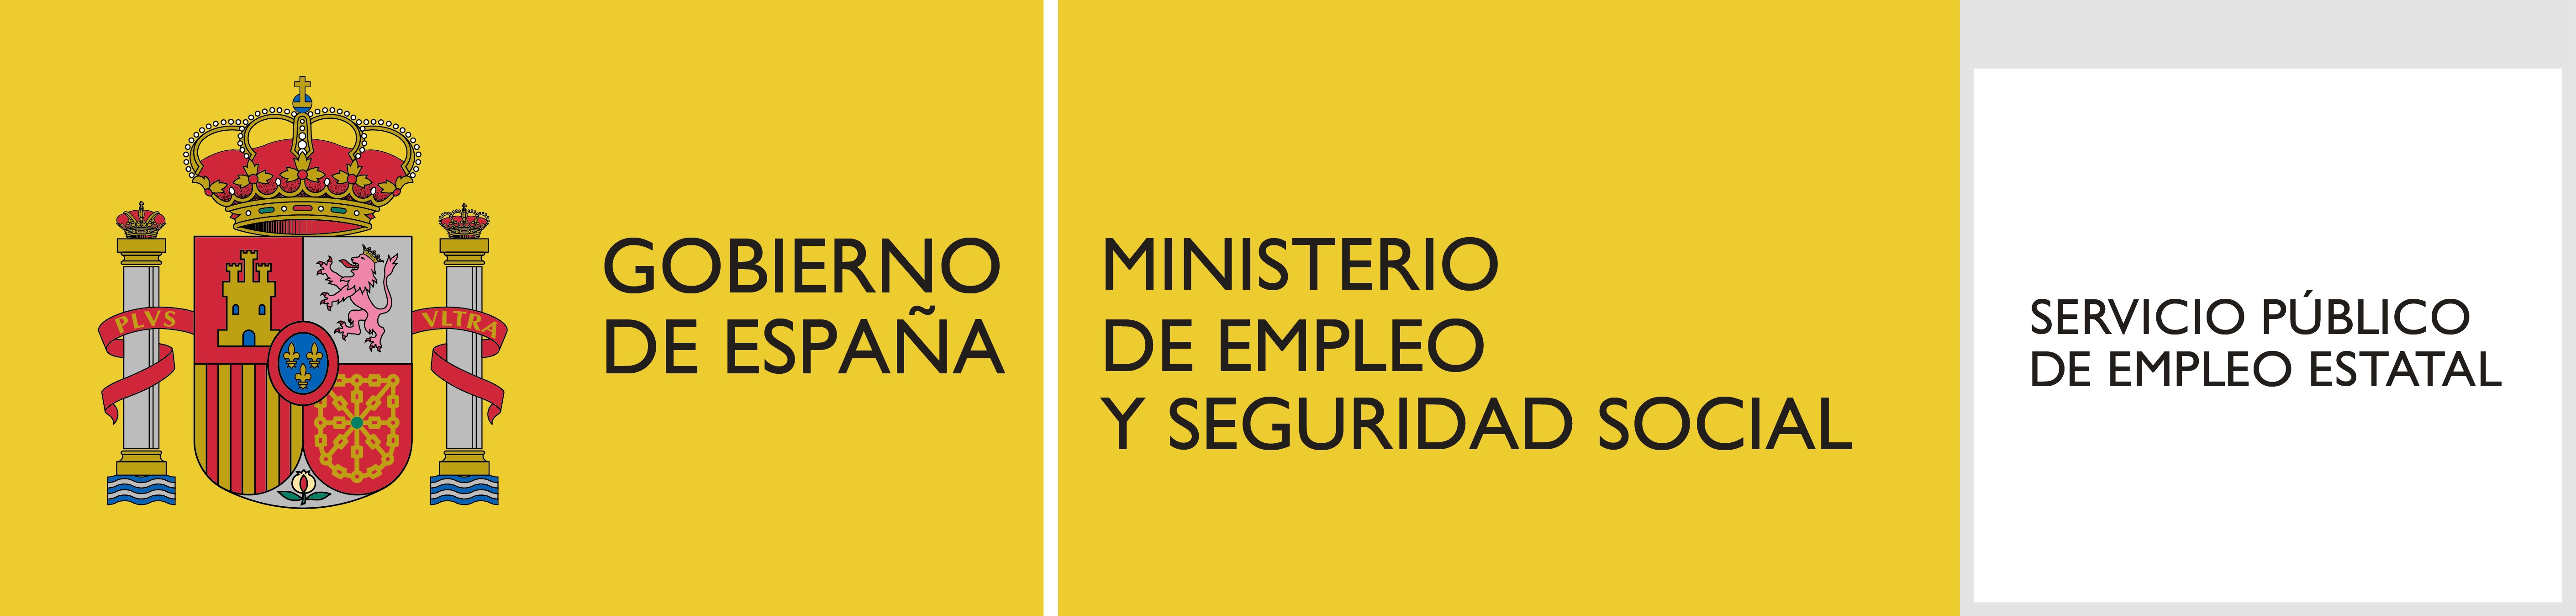 Gobierno de España: Ministerio de Empleo y Seguridad Social- Servicio Público de Empleo Estatal